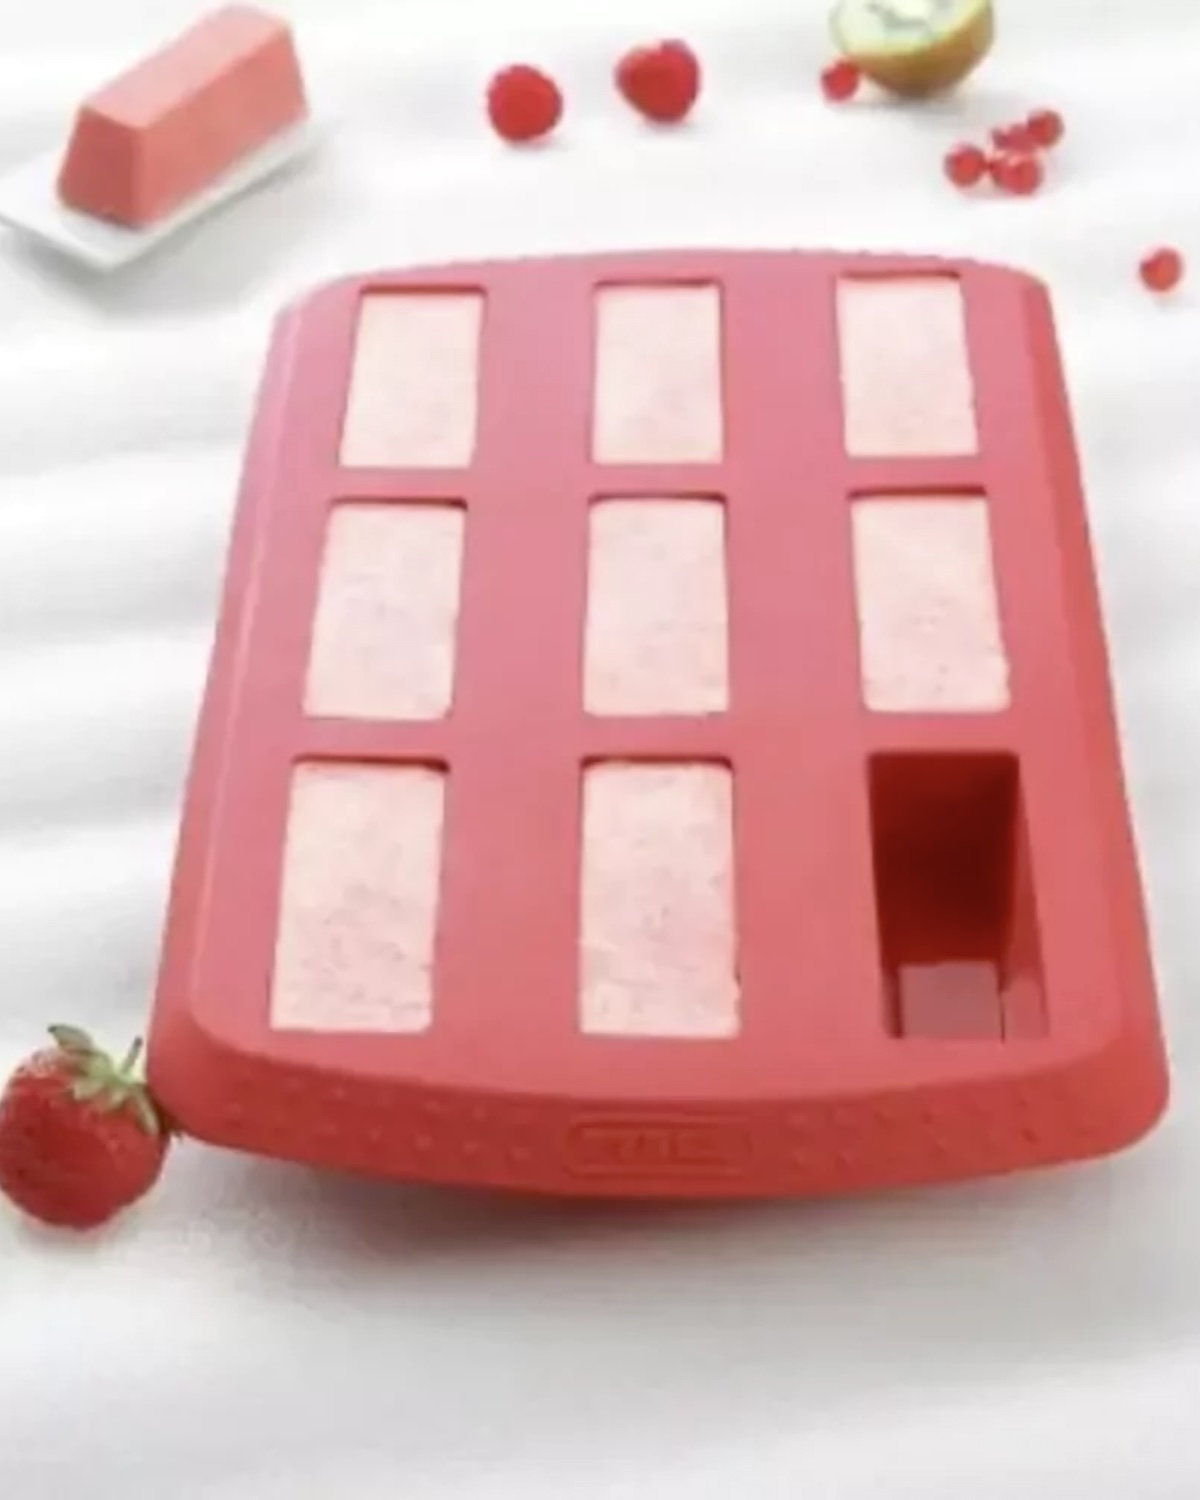 Mini glaces à la fraise maison, sans sorbetière